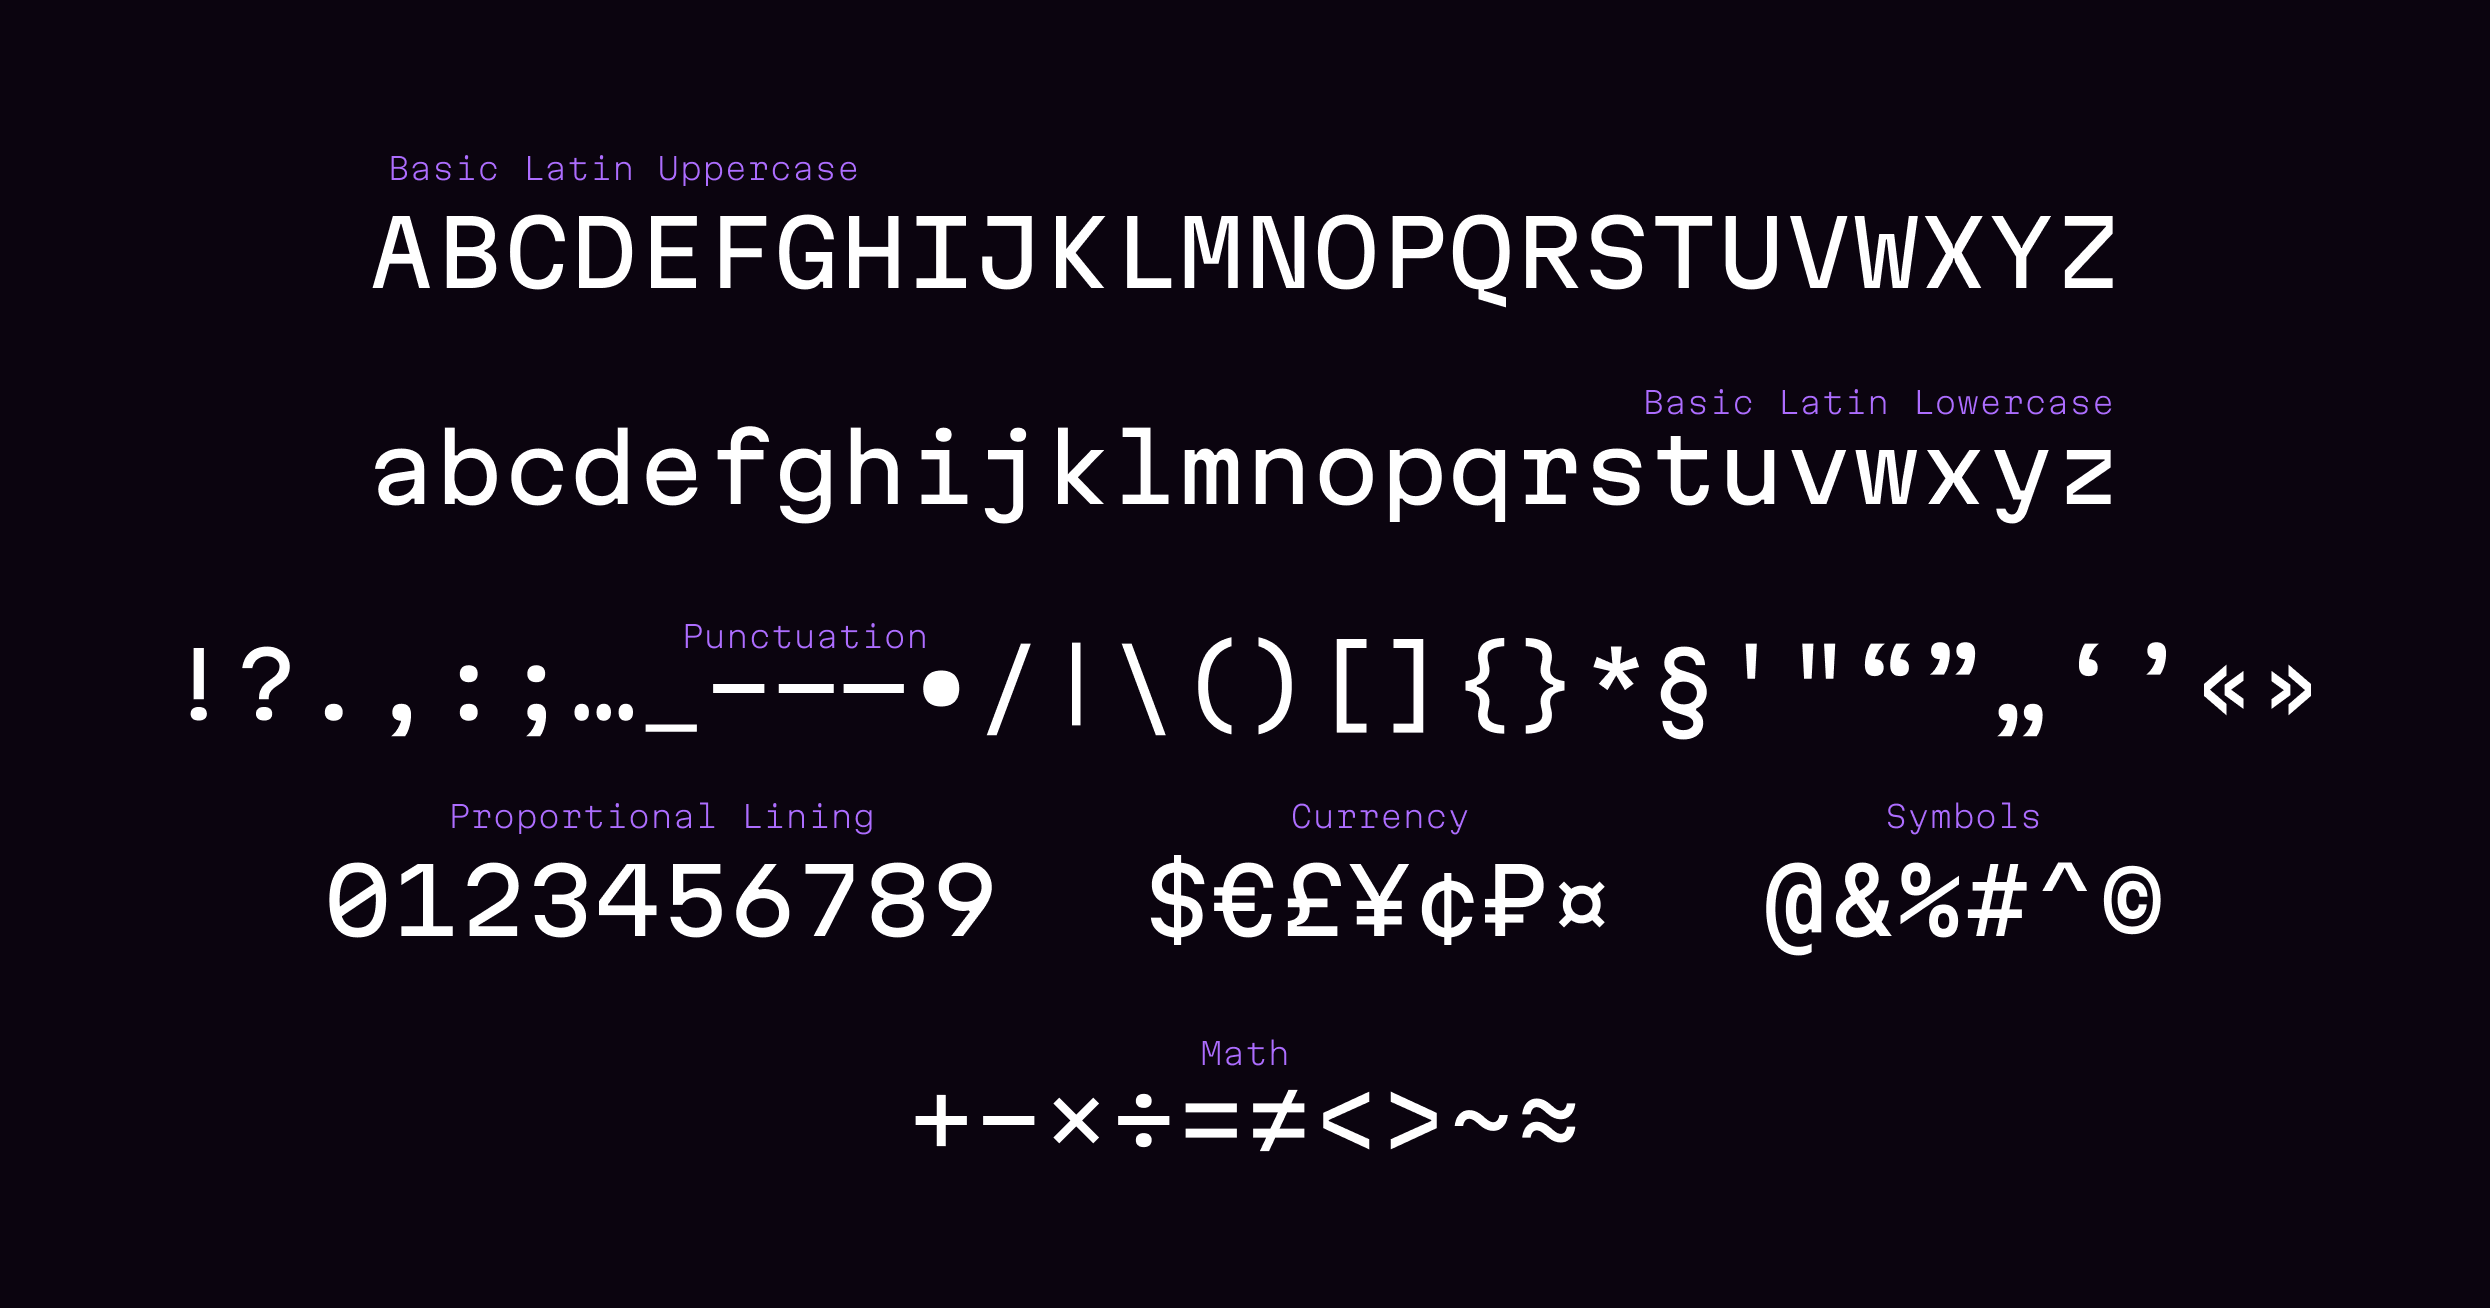 Martian Mono Font